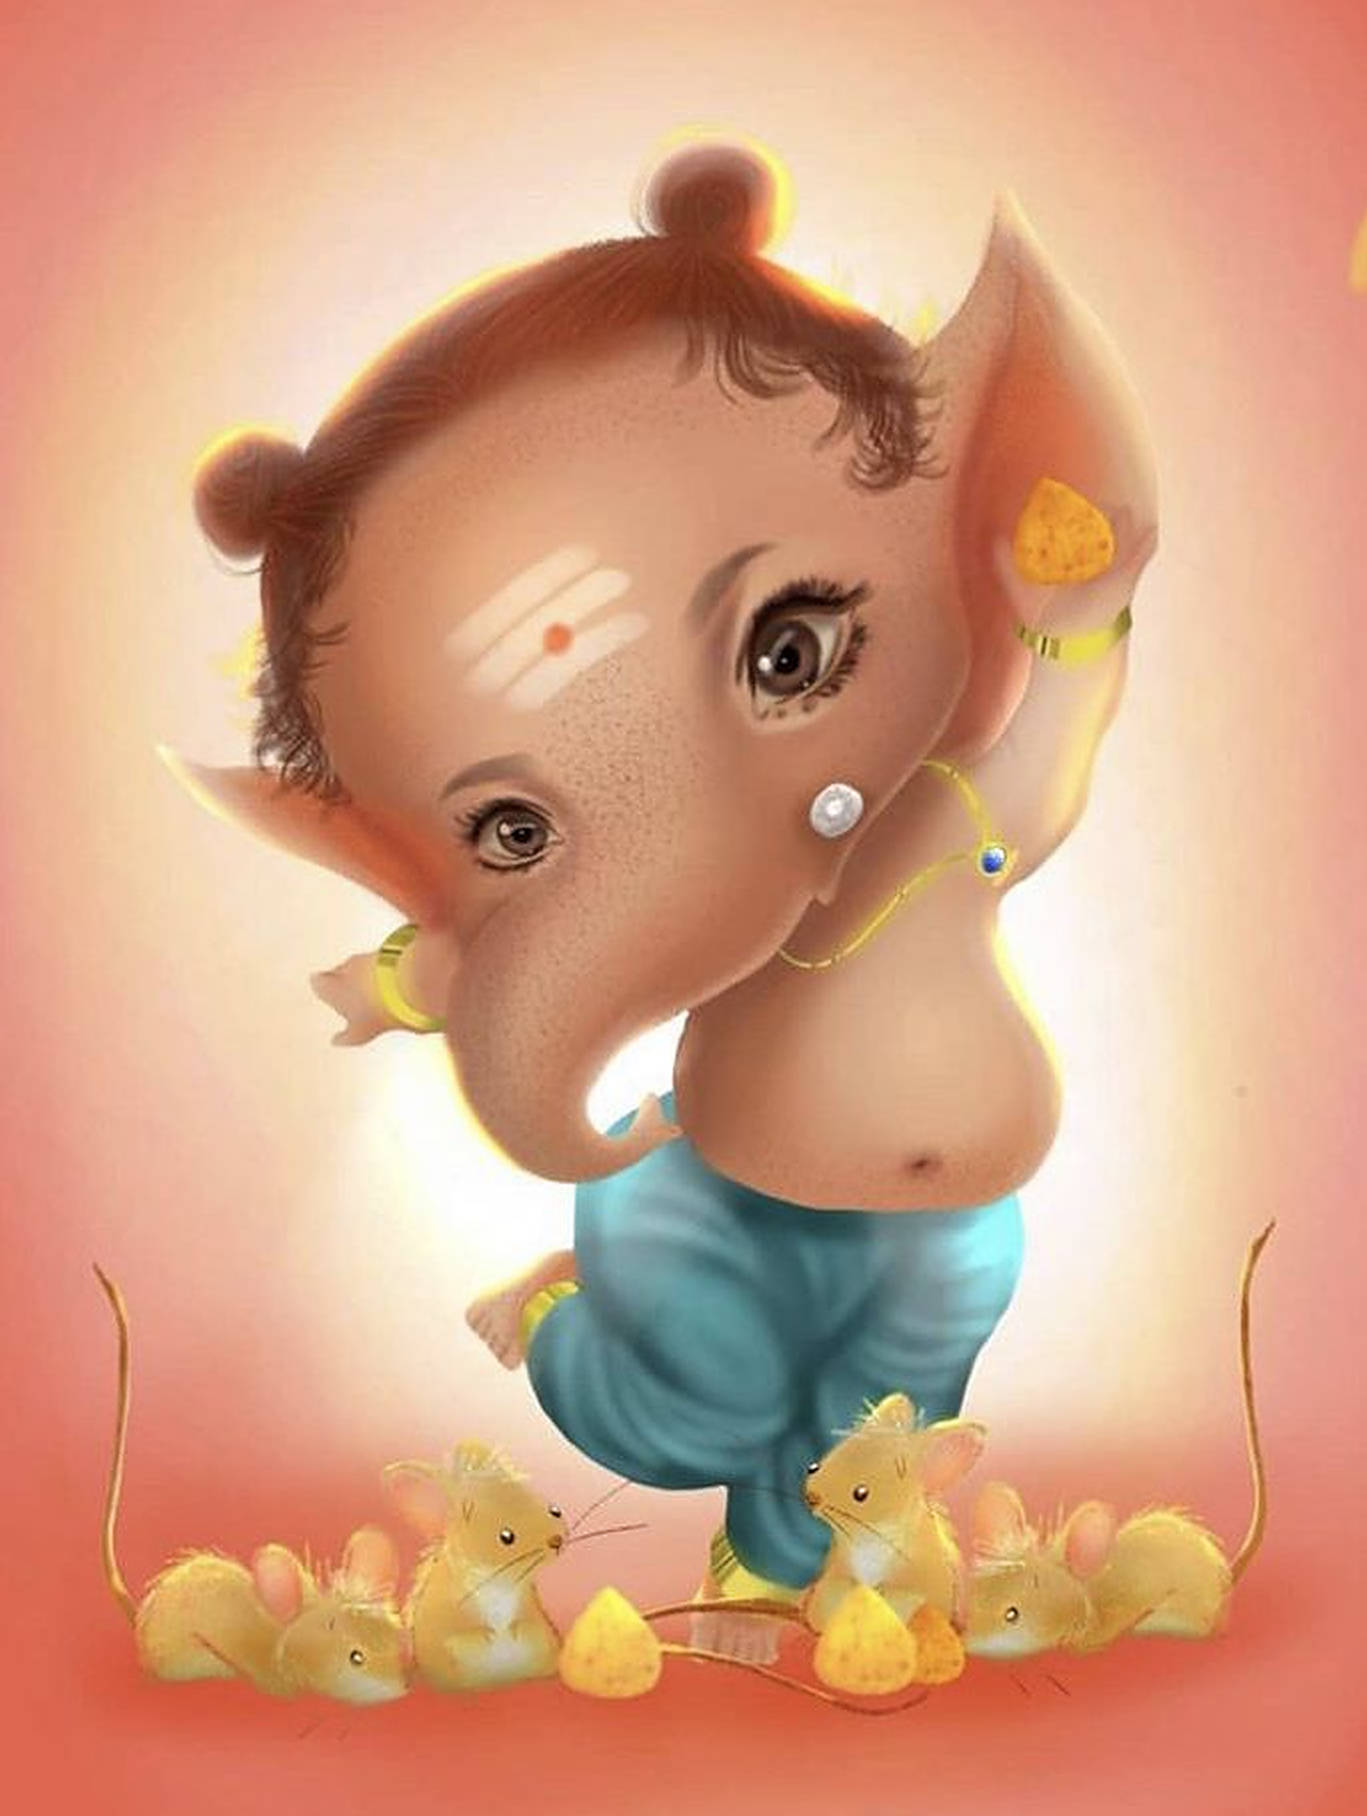 Baby Ganesh Yellow Rats Wallpaper